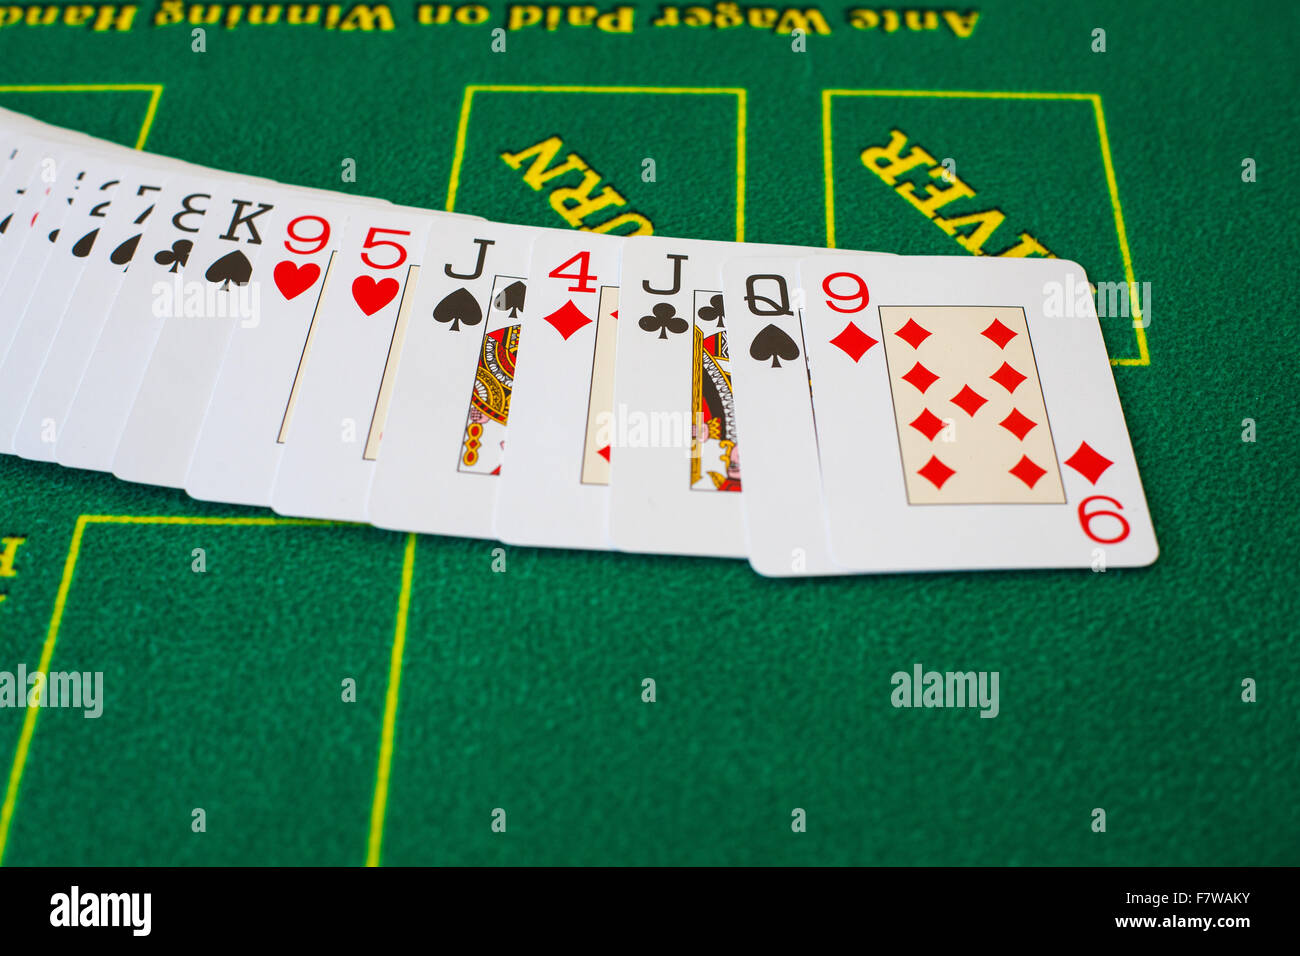 Cartes françaises pour le Texas hold'em sur une table de poker de casino Jeu de hasard risque de pari Banque D'Images